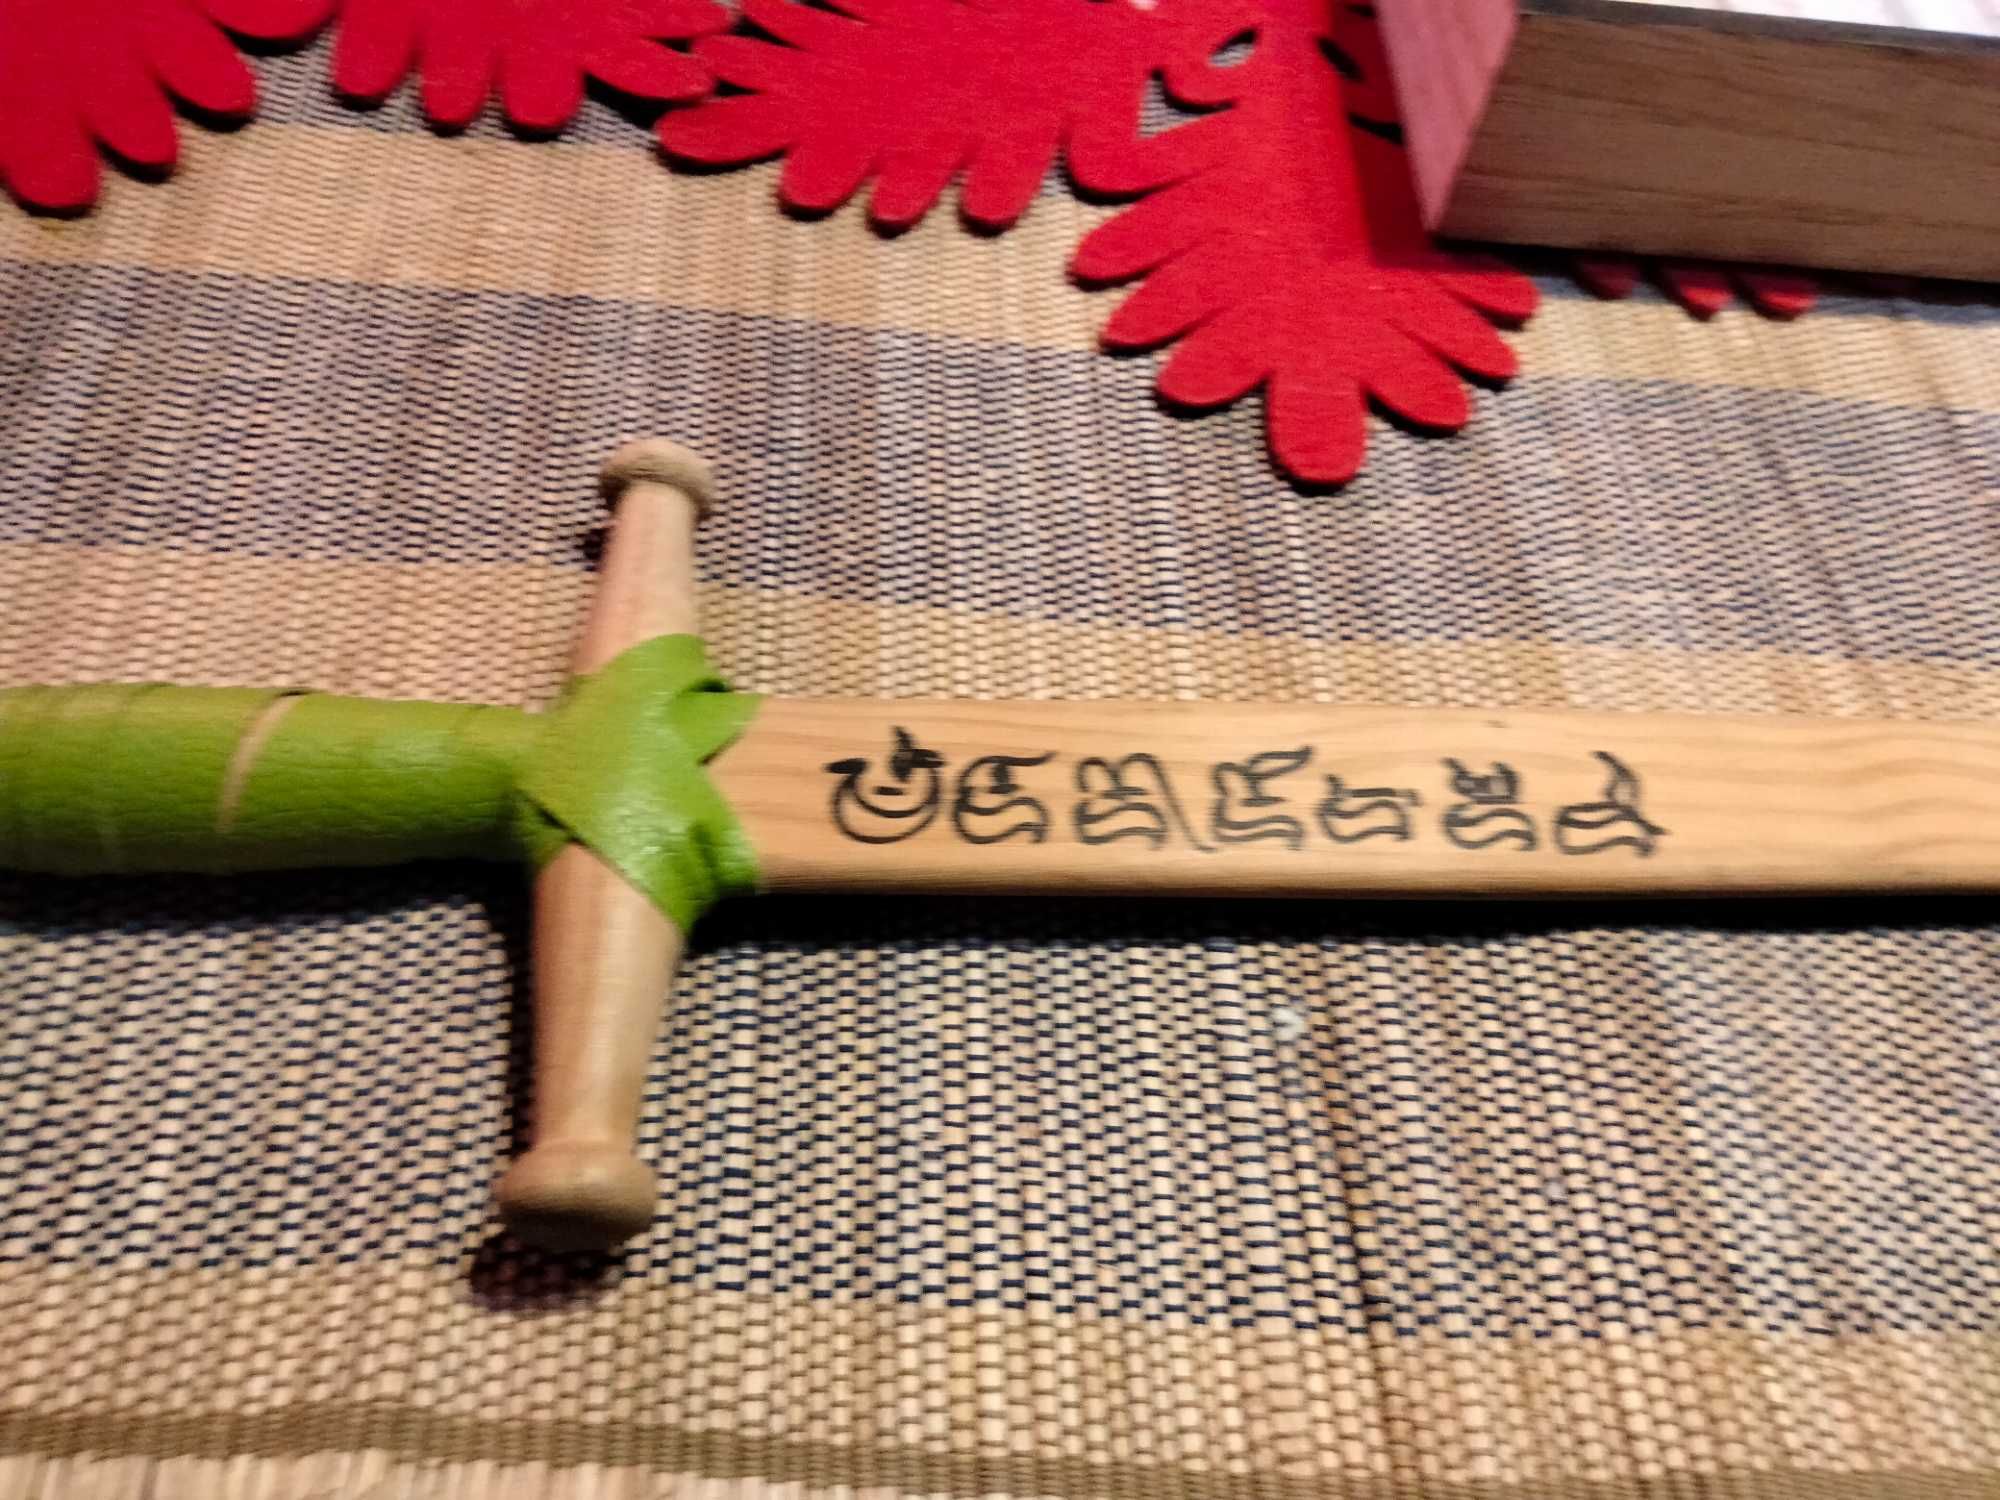 Espada em madeira